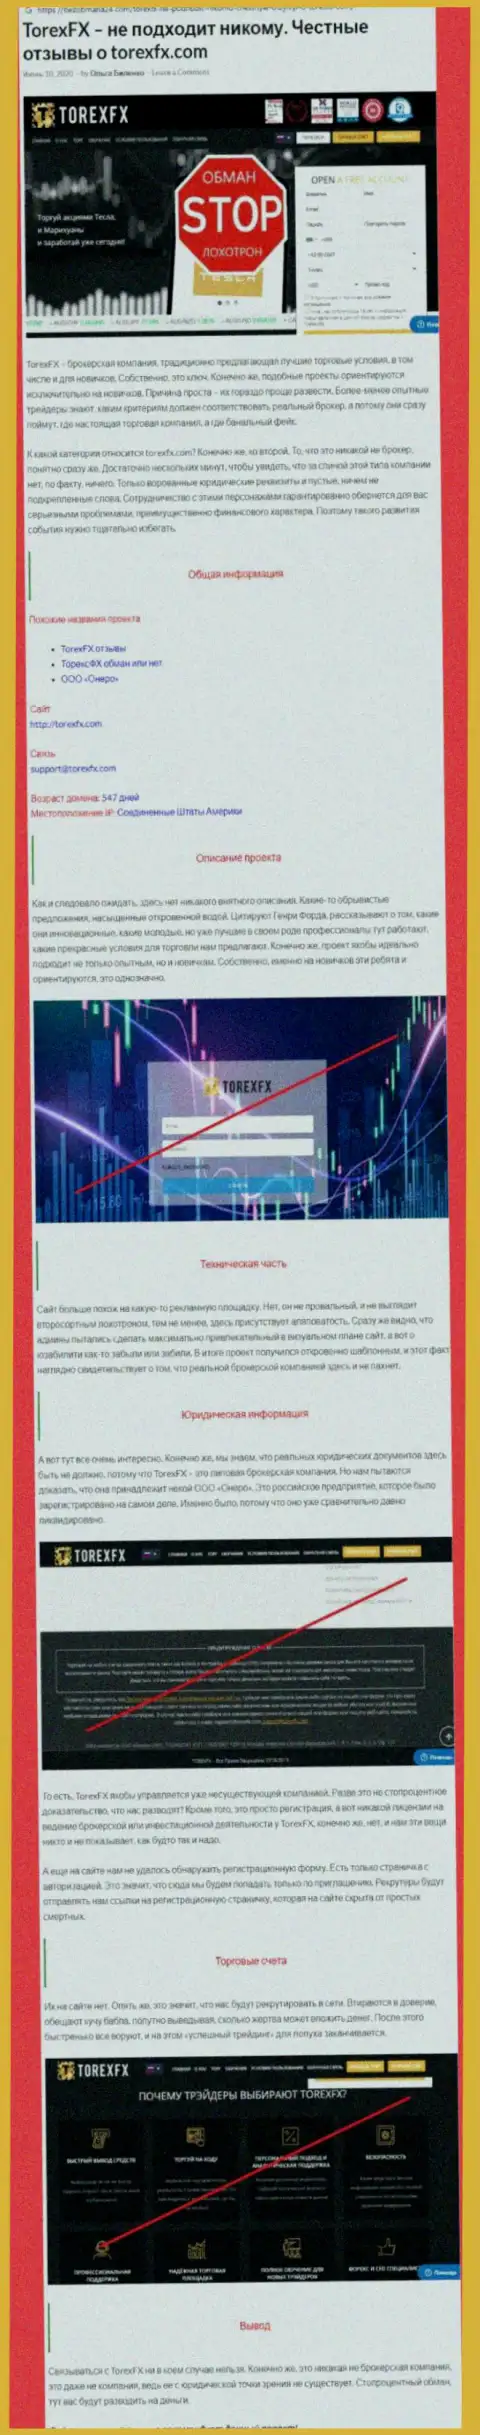 Финансовые средства НЕ ОТПРАВЛЯЙТЕ !!! В Torex FX обманывают и воруют вложенные денежные средства (обзор)